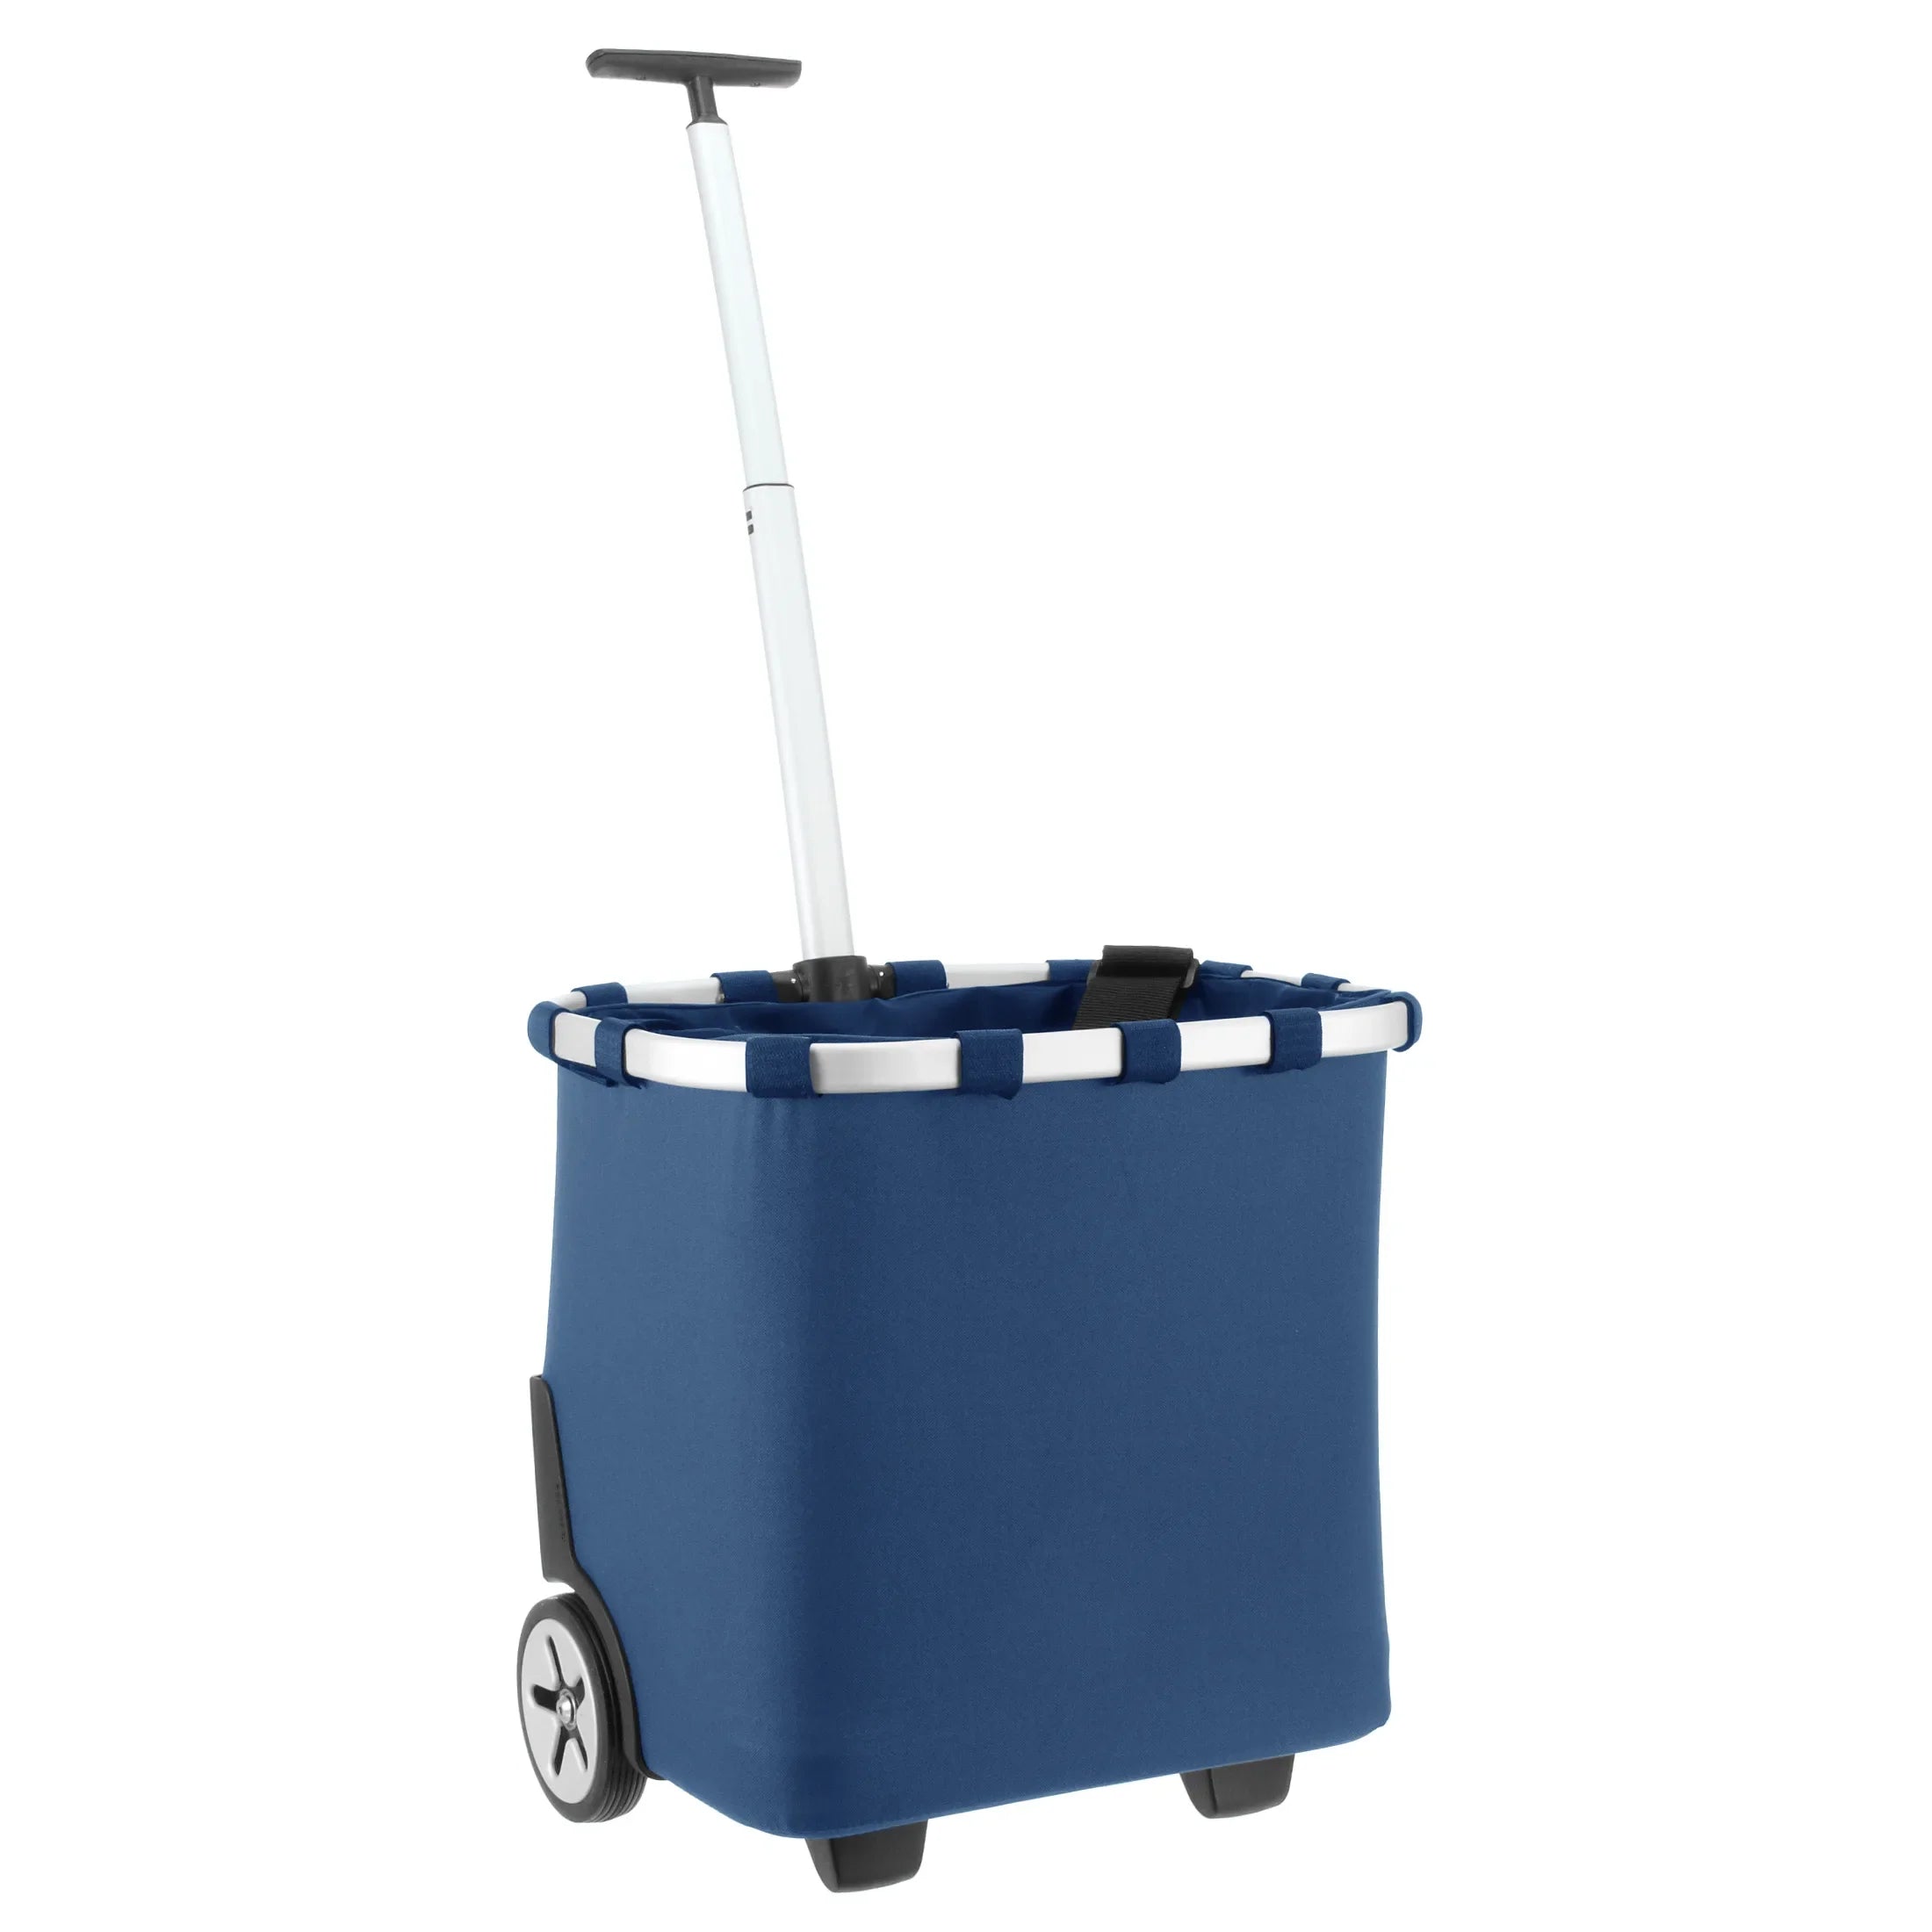 Reisenthel Shopping Carrycruiser panier à provisions à roulettes 48 cm - bleu foncé